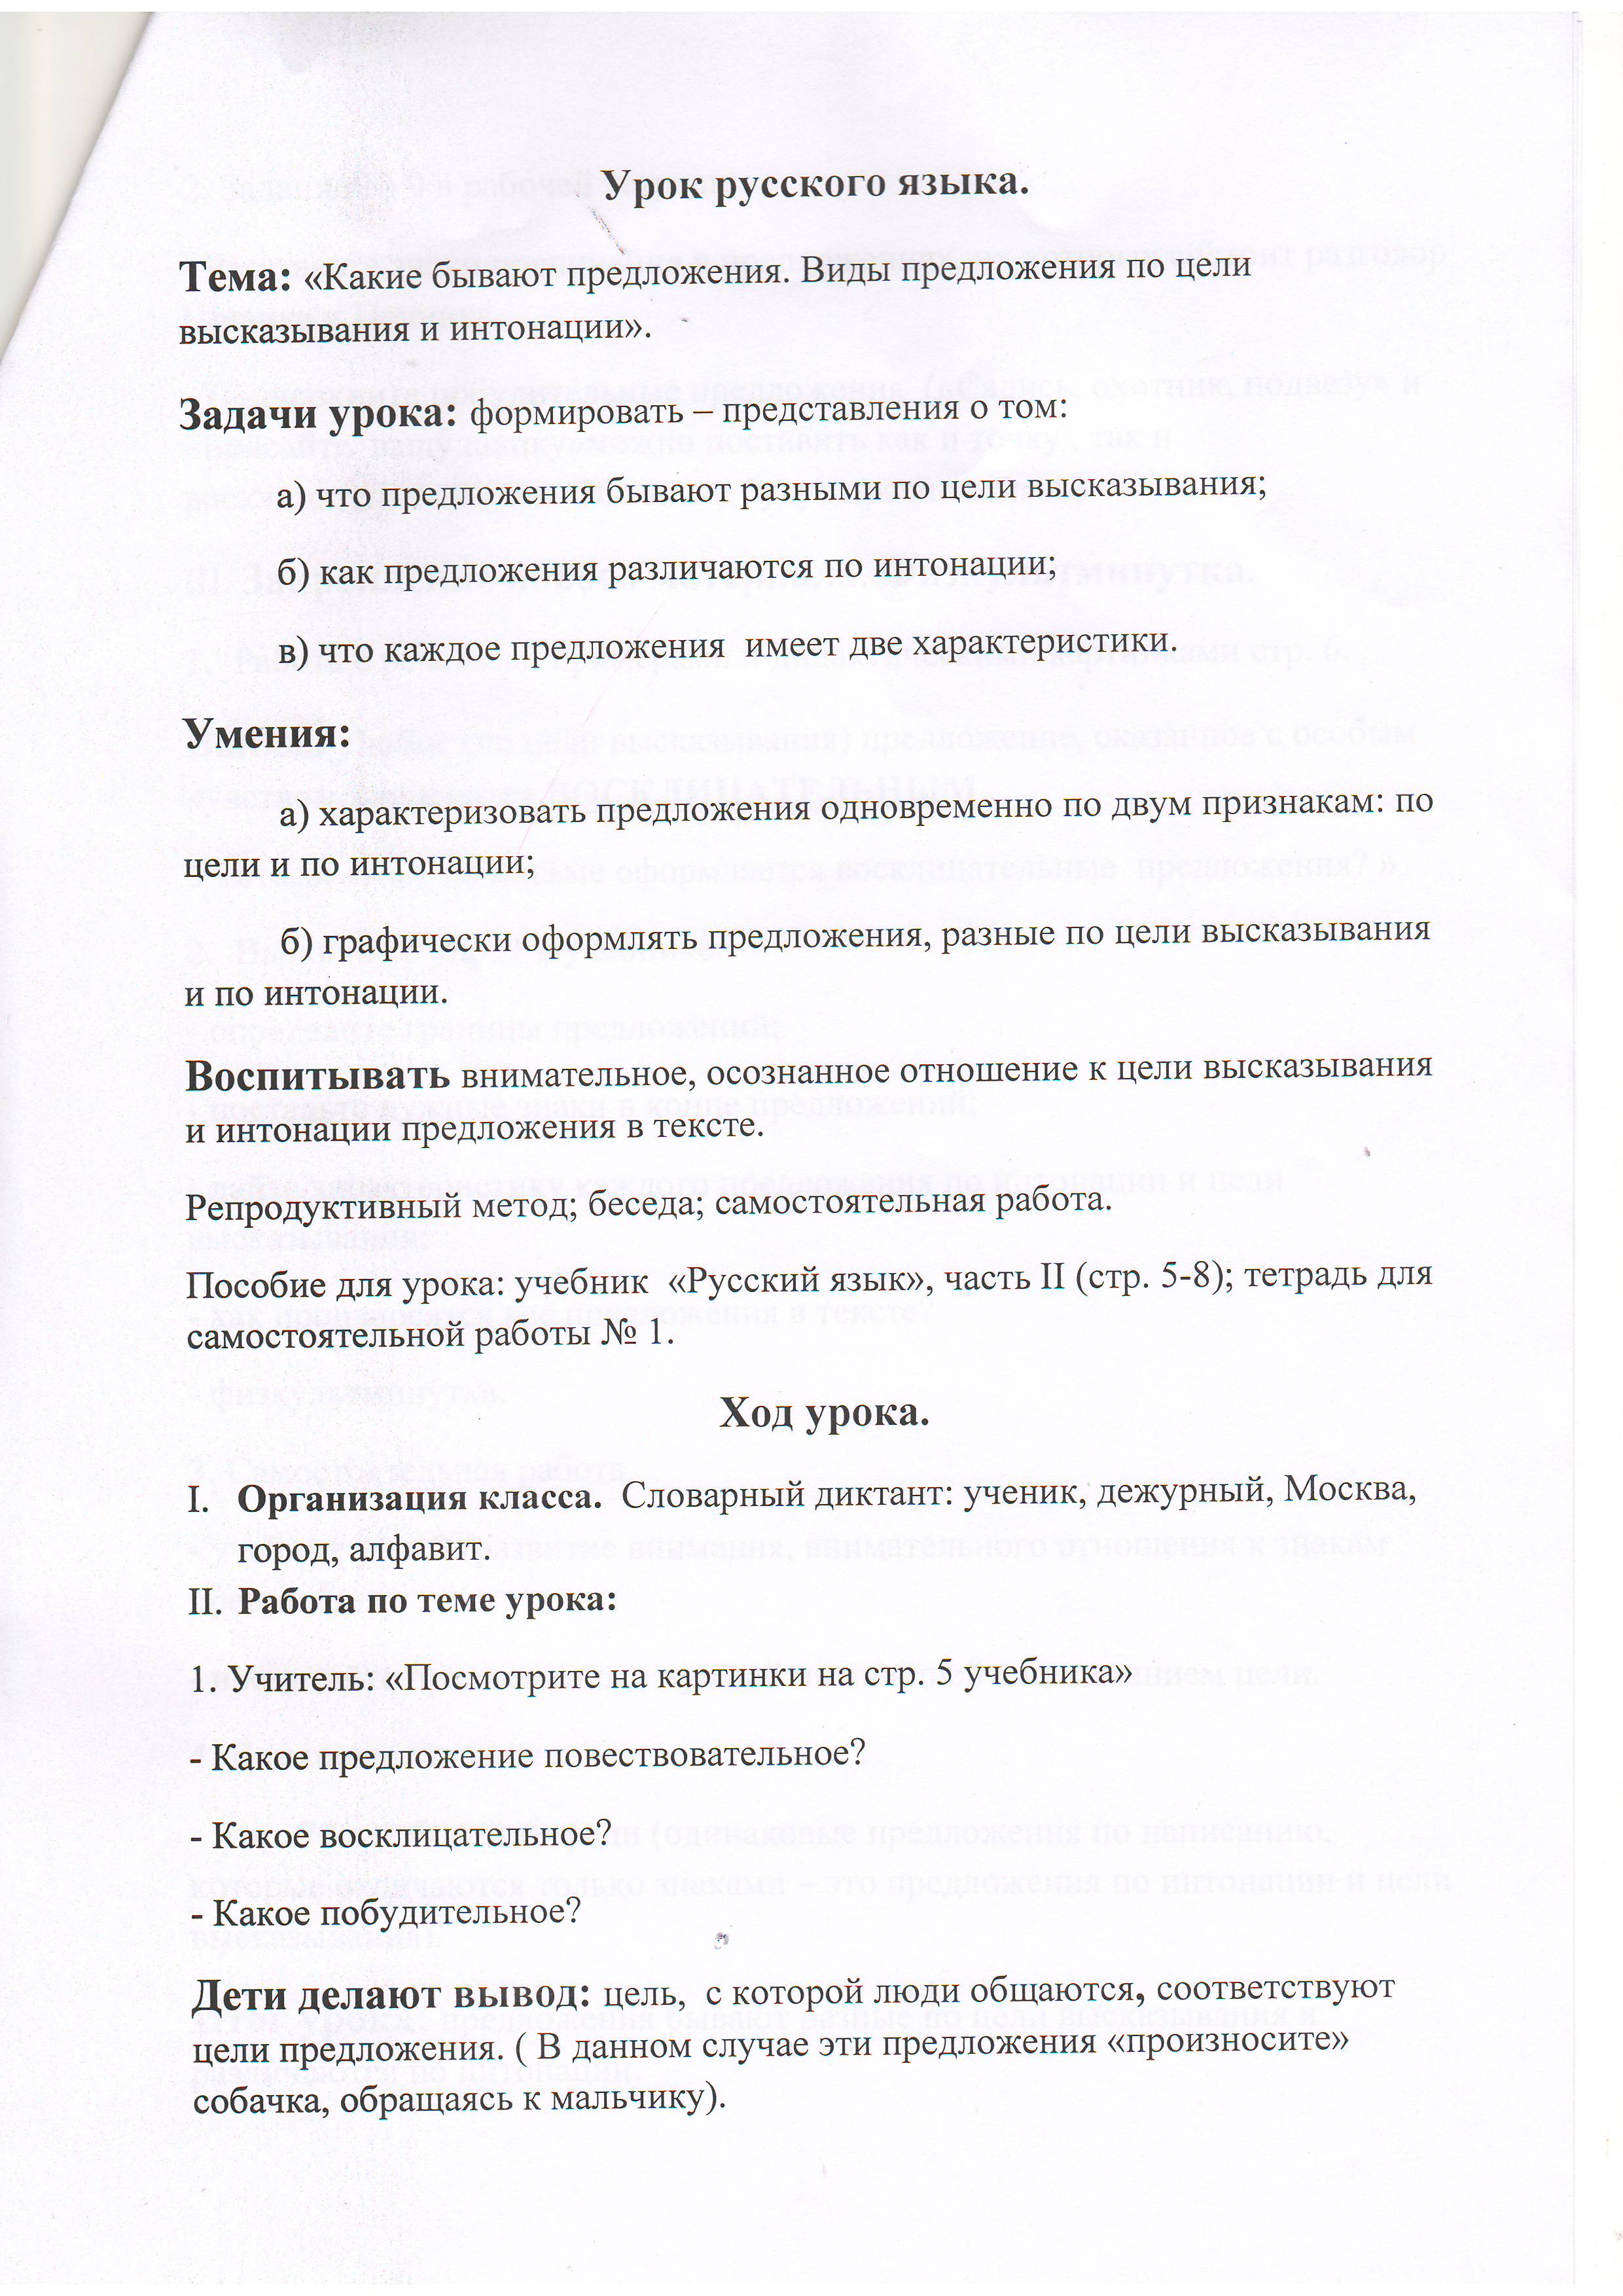 Конспект урока по русскому языку во 2-ом классе на тему: Какие бывают предложения. Виды предложения по цели высказывания и интонации